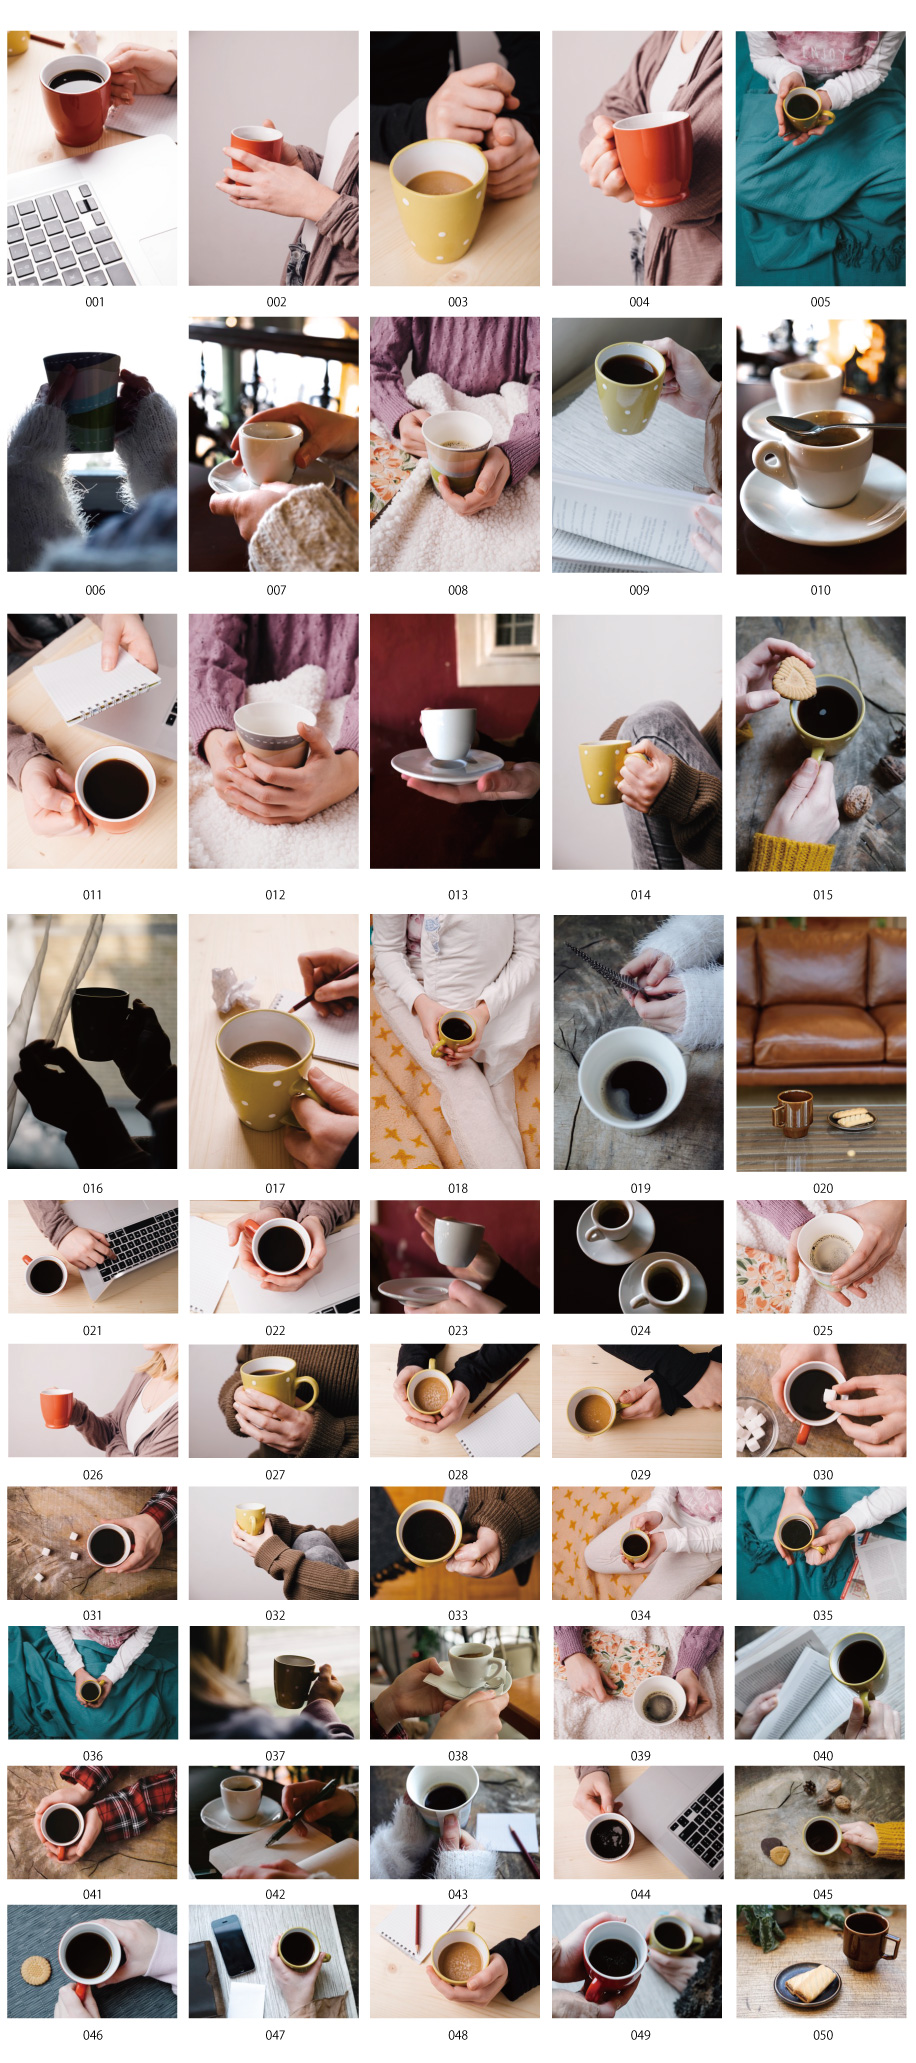 Tài liệu ảnh thời gian cà phê